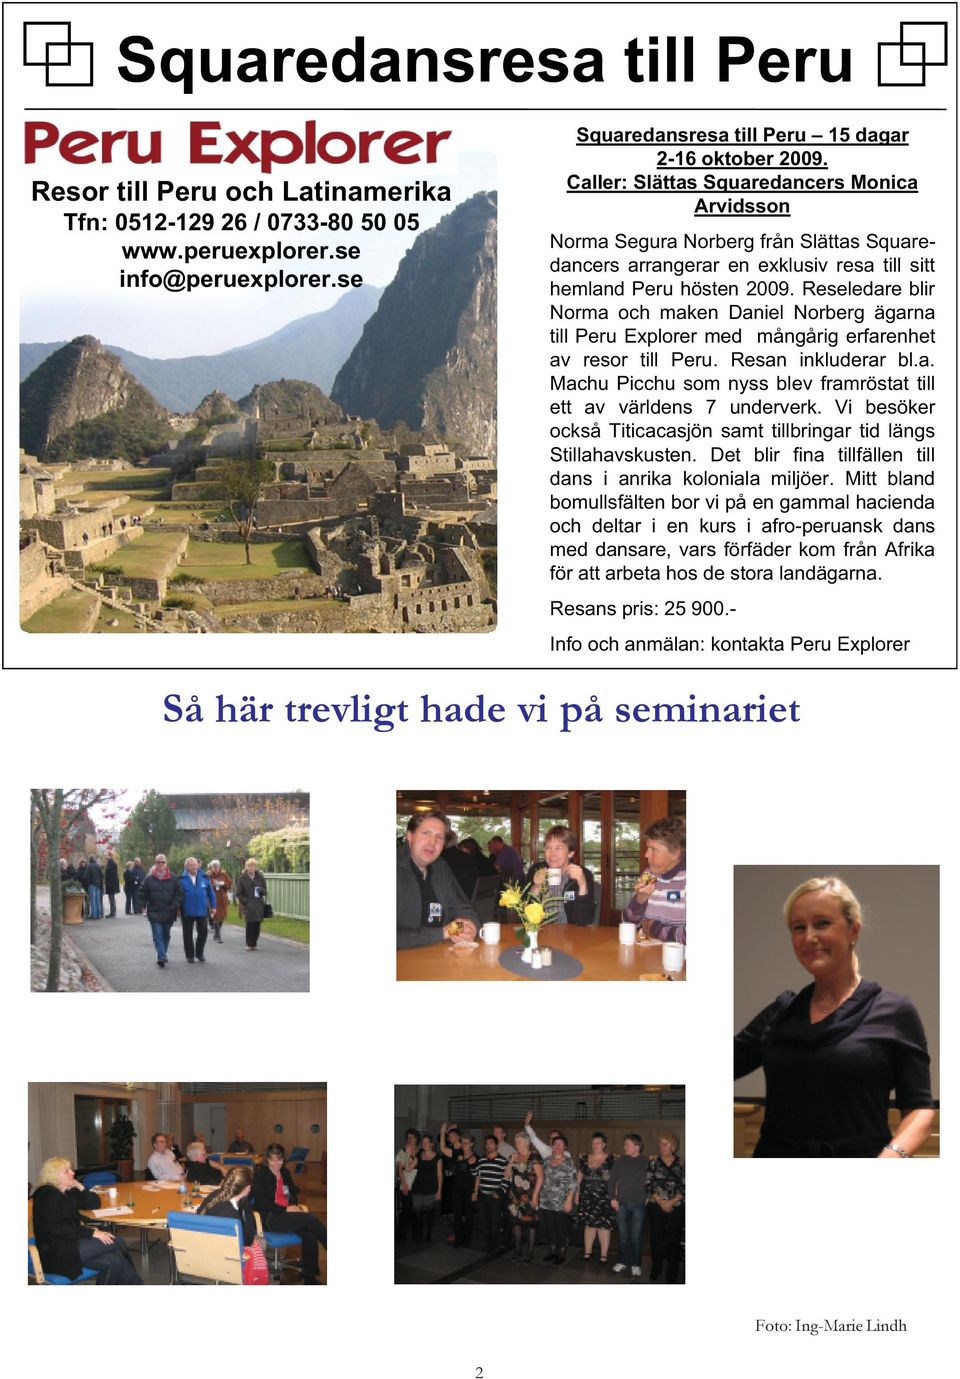 Reseledare blir Norma och maken Daniel Norberg ägarna till Peru Explorer med mångårig erfarenhet av resor till Peru. Resan inkluderar bl.a. Machu Picchu som nyss blev framröstat till ett av världens 7 underverk.